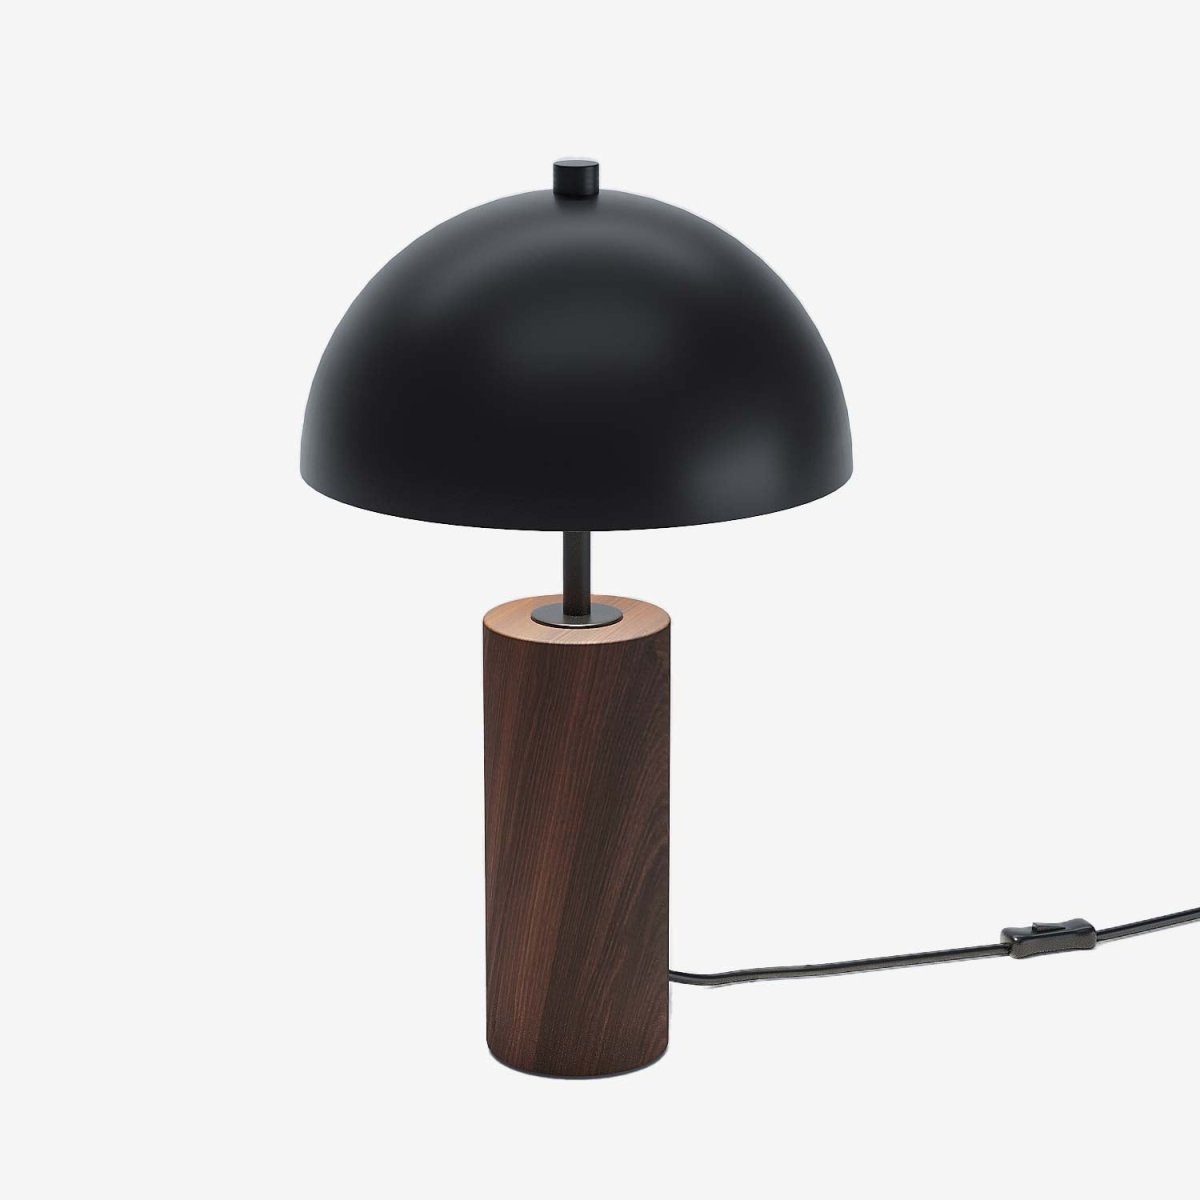 Lampe de bureau vintage abat-jour cloche en métal noir effet bois - Potiron Paris, le luminaire design de la décoration d'intérieur chic et moderne